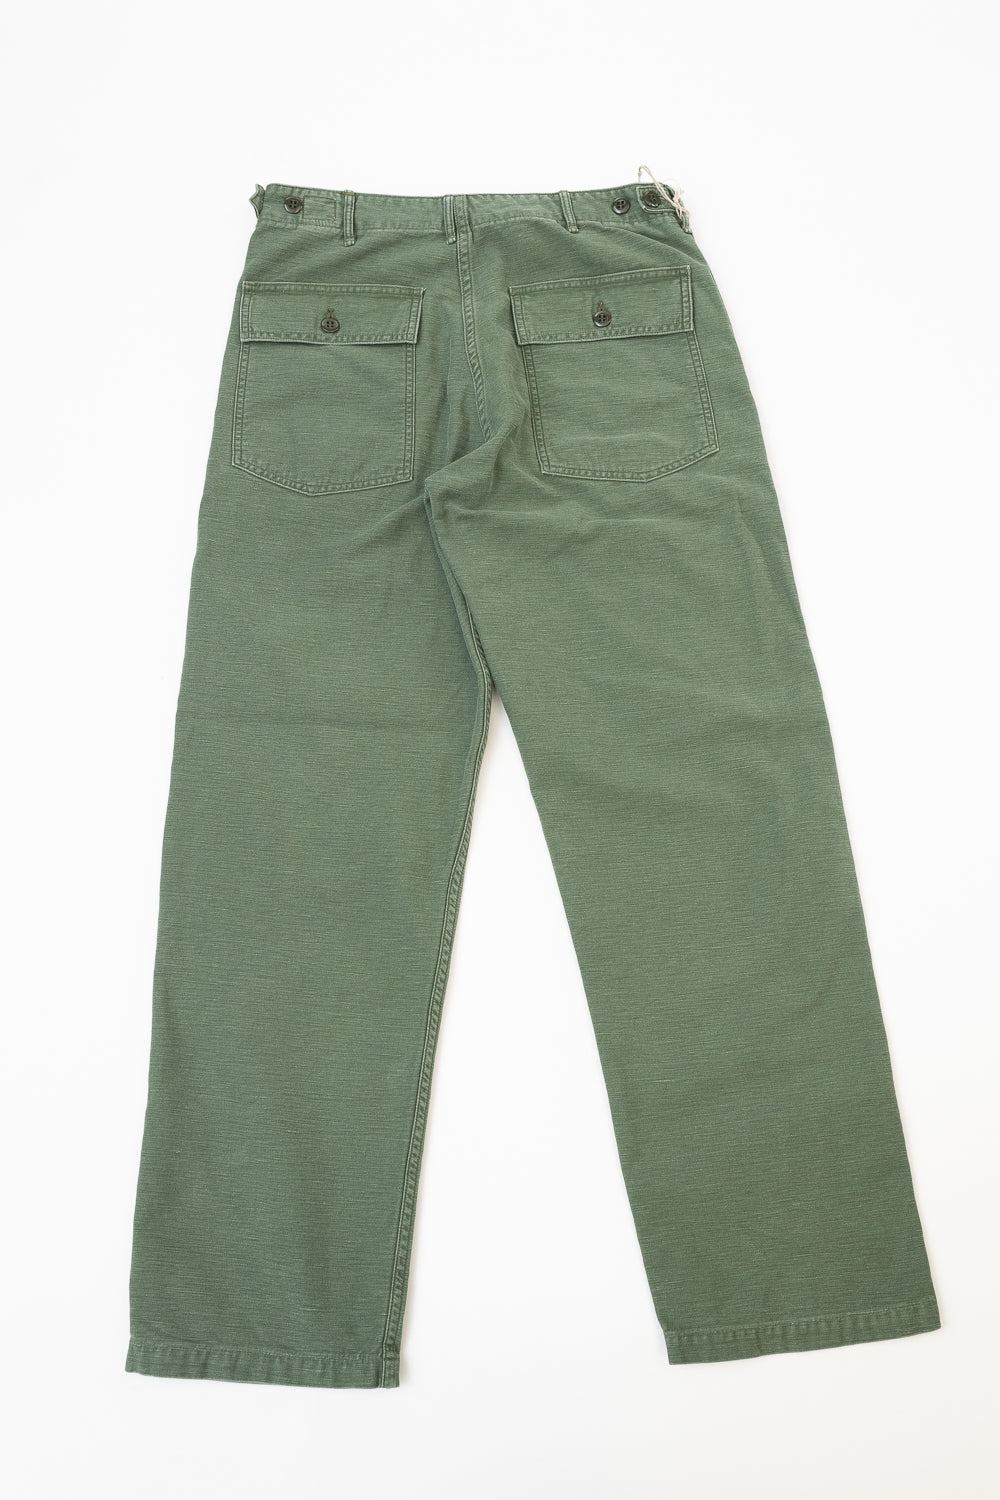 01-5002-216 - Fatigue Pants Reverse Sateen - Standard Fit - Vintage Washed Olive